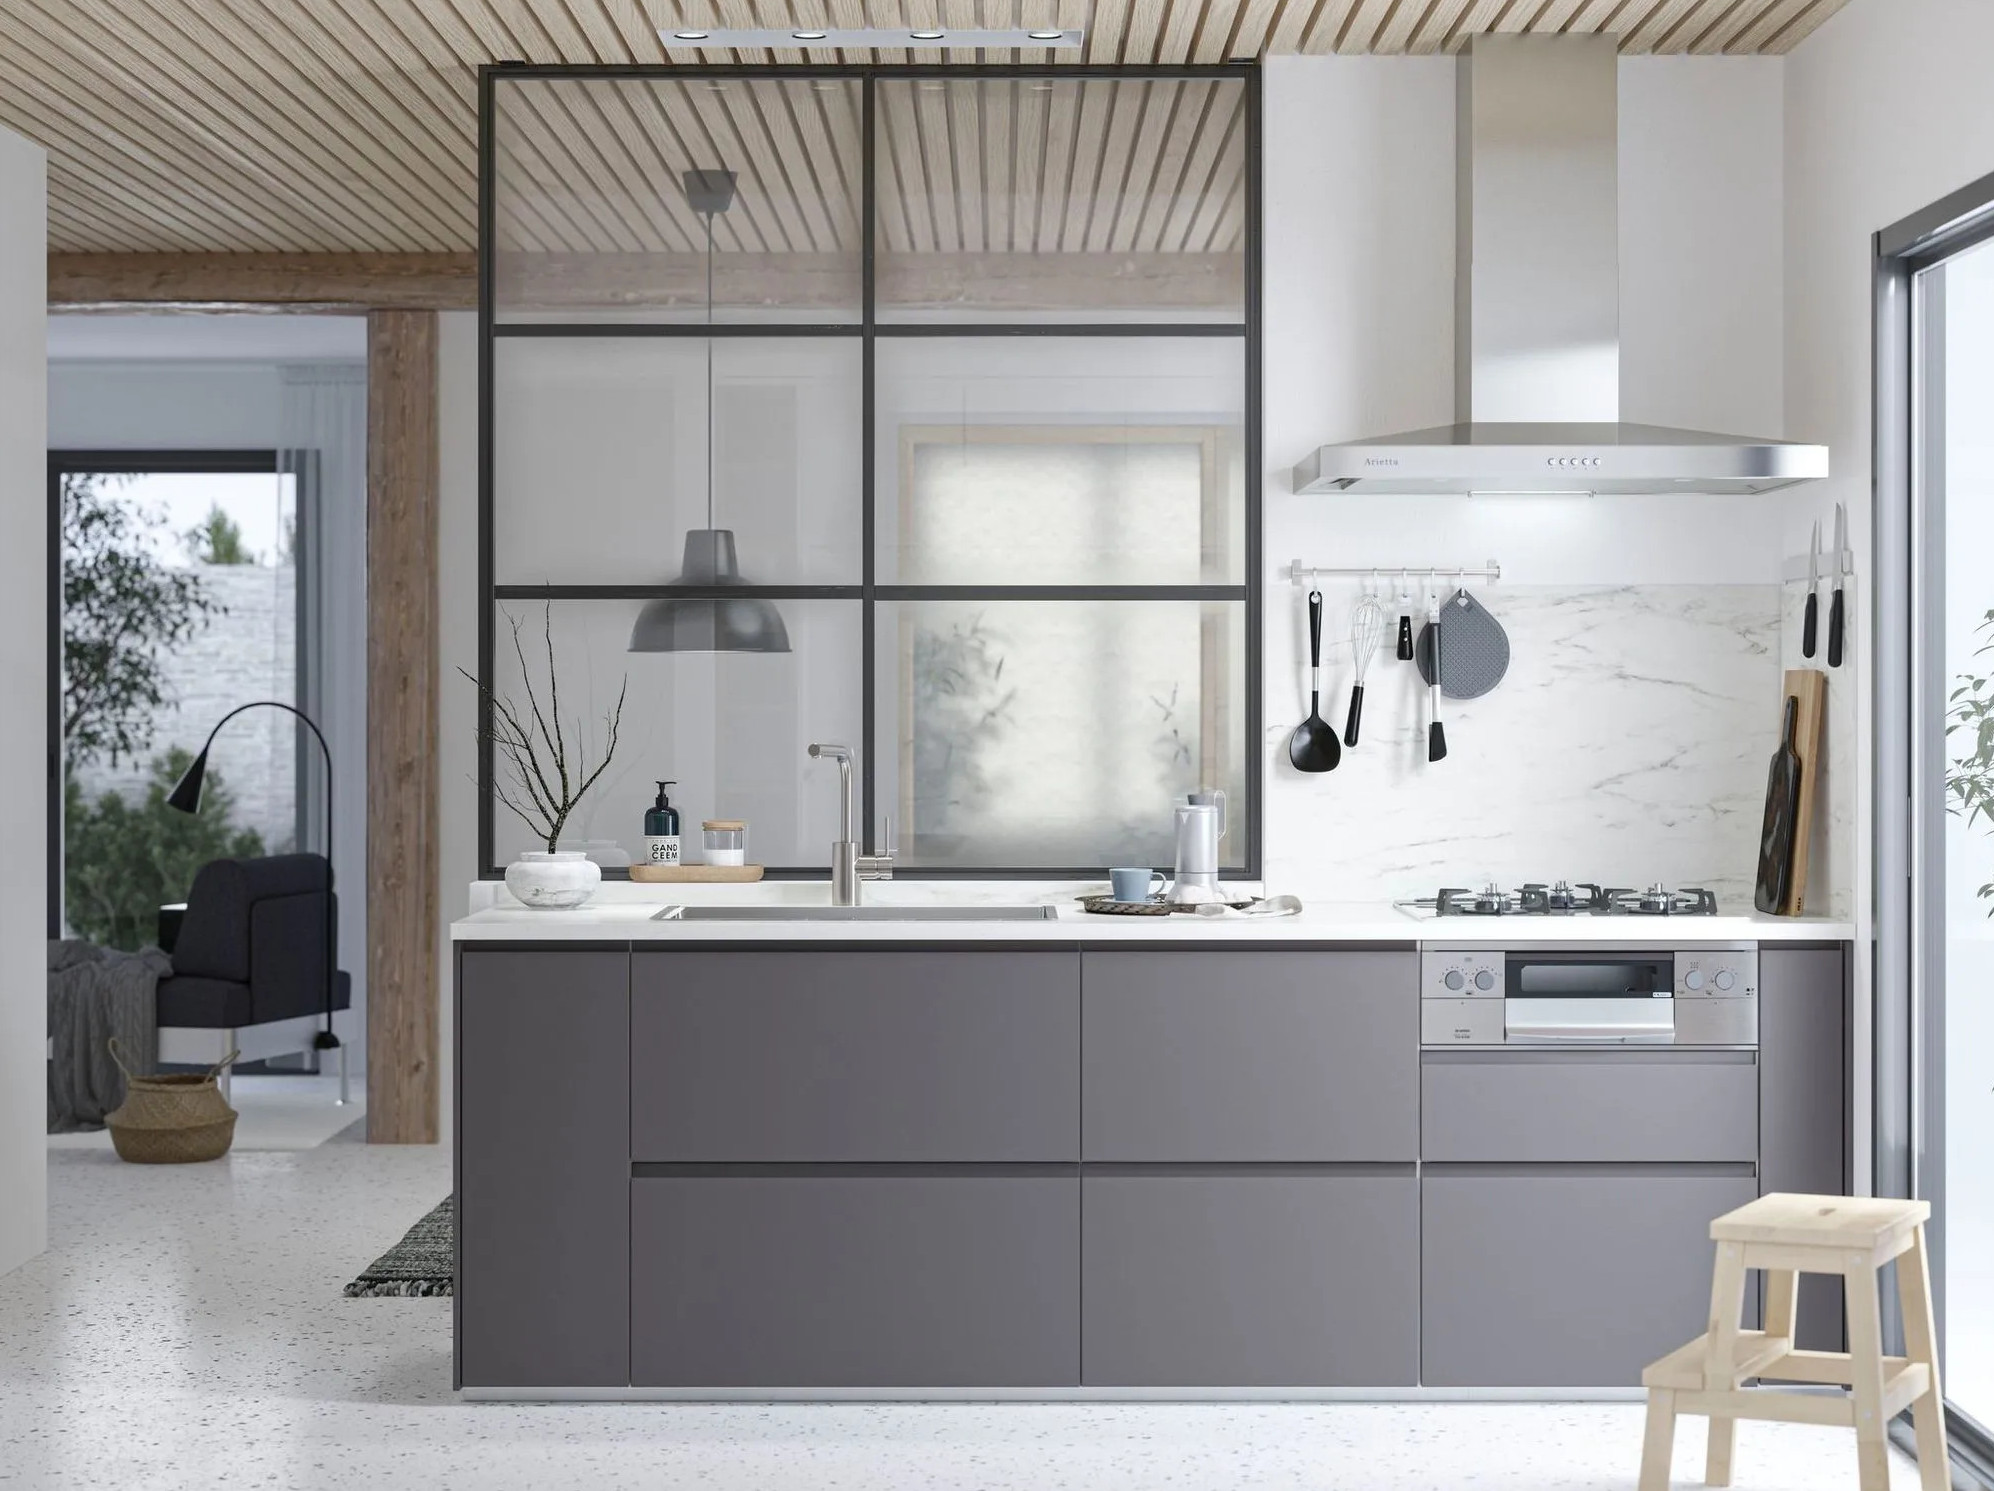 Peinture cuisine : Le gris anthracite une couleur déco tendance   Minimalist house design, Minimalist kitchen design, Minimalist bedroom